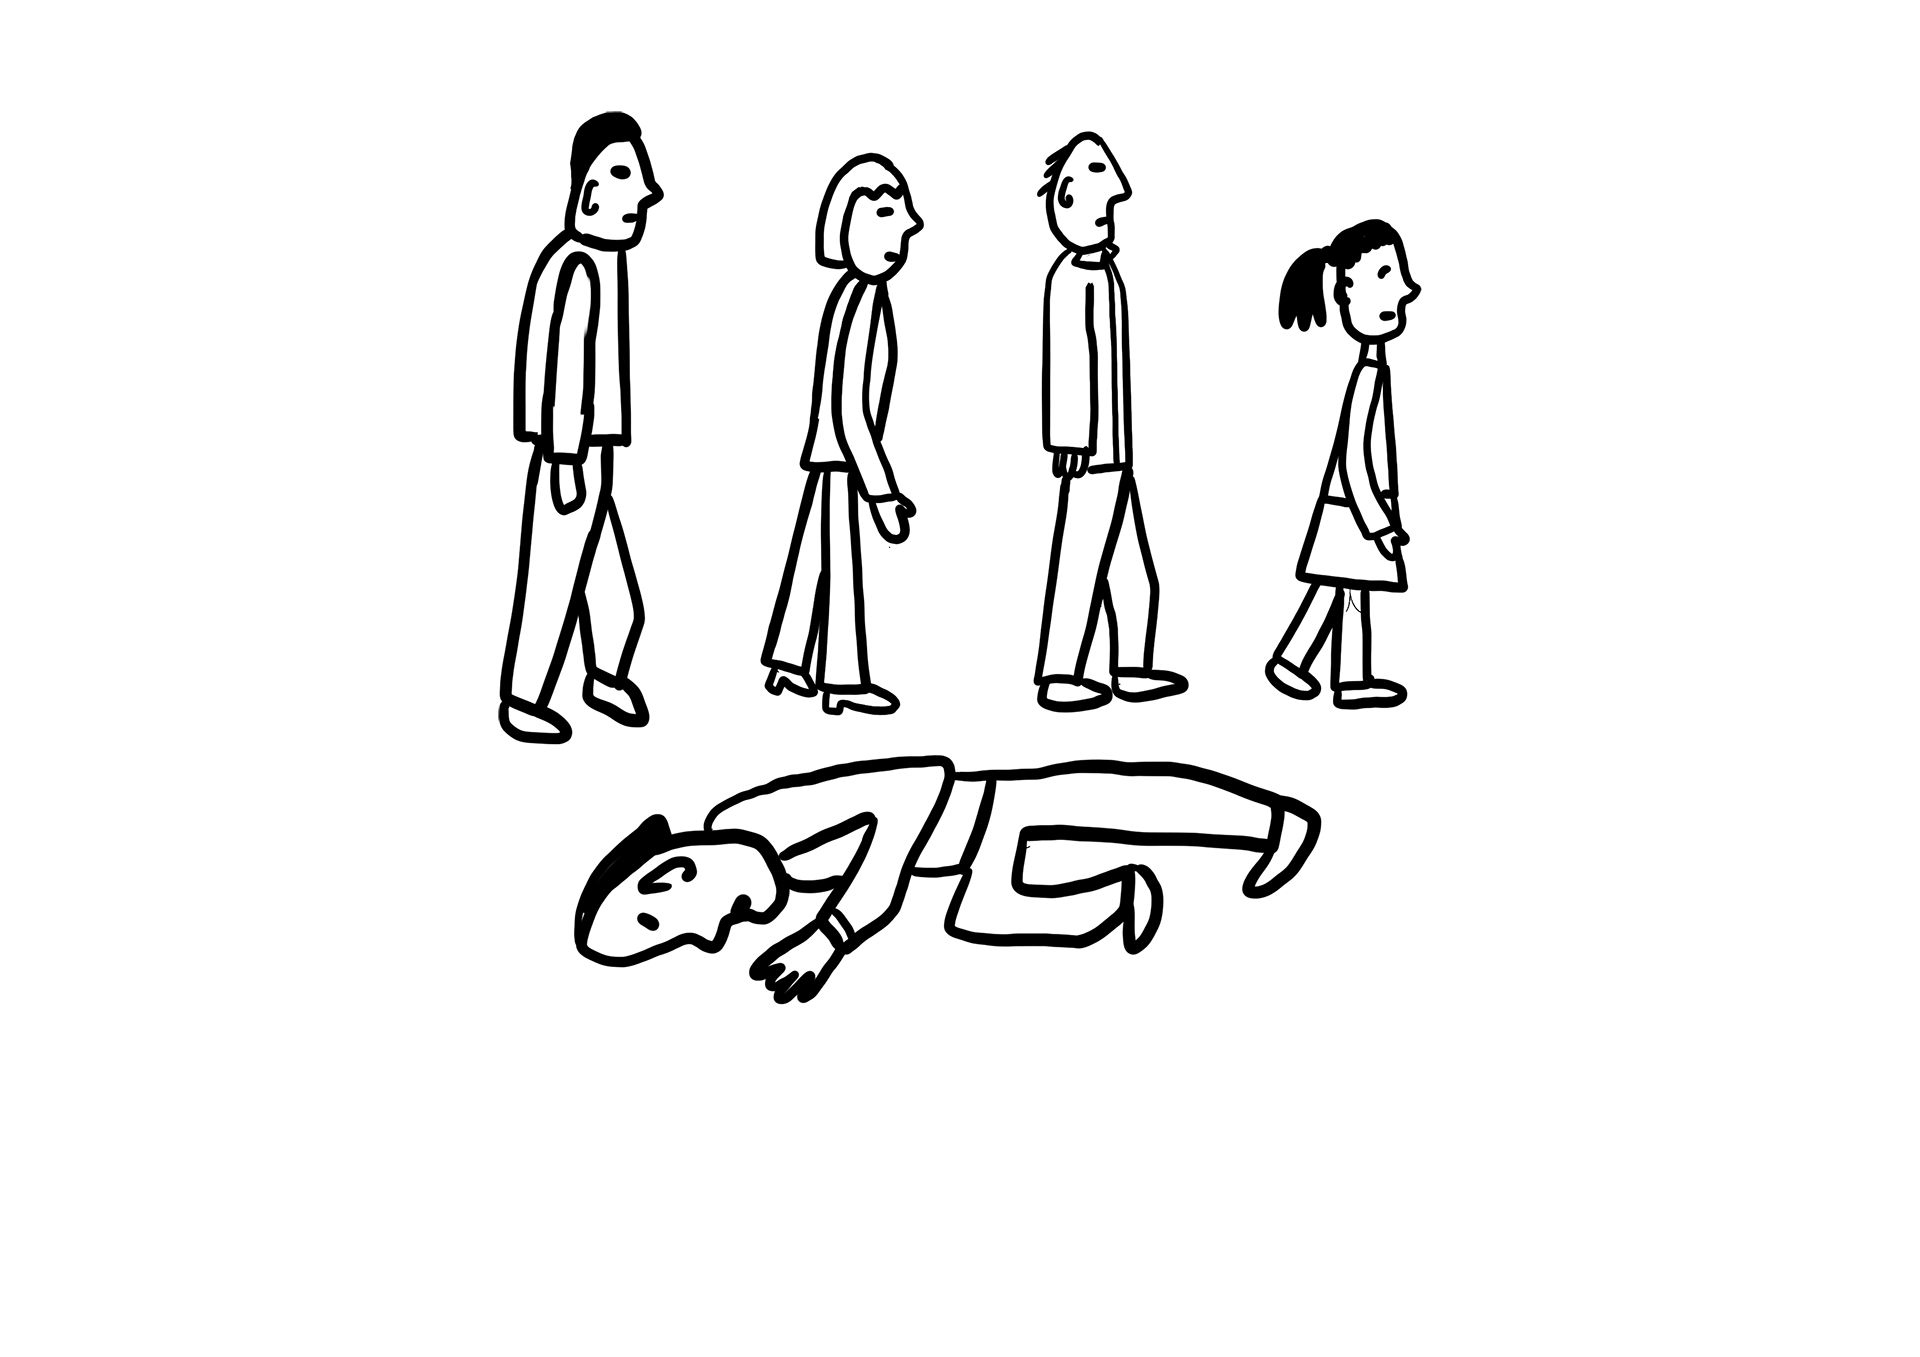 Fire mennesker går forbi en person som ligger på bakken (stilisert tegning)